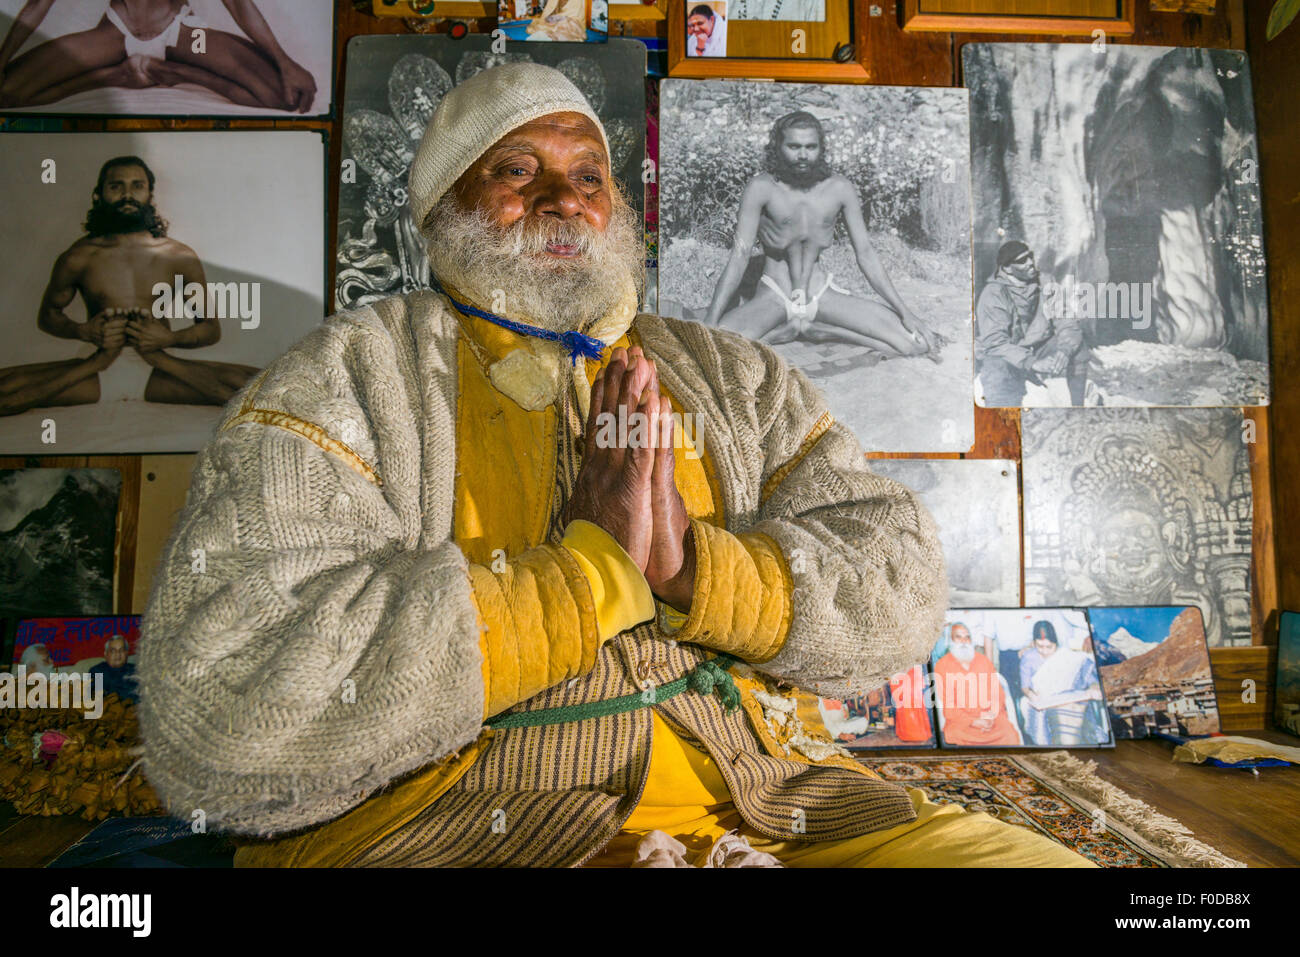 Un portrait de Swami Sundaranand, un célèbre Sadhu, yogi et photographe, Gangotri, Uttarakhand, Inde Banque D'Images